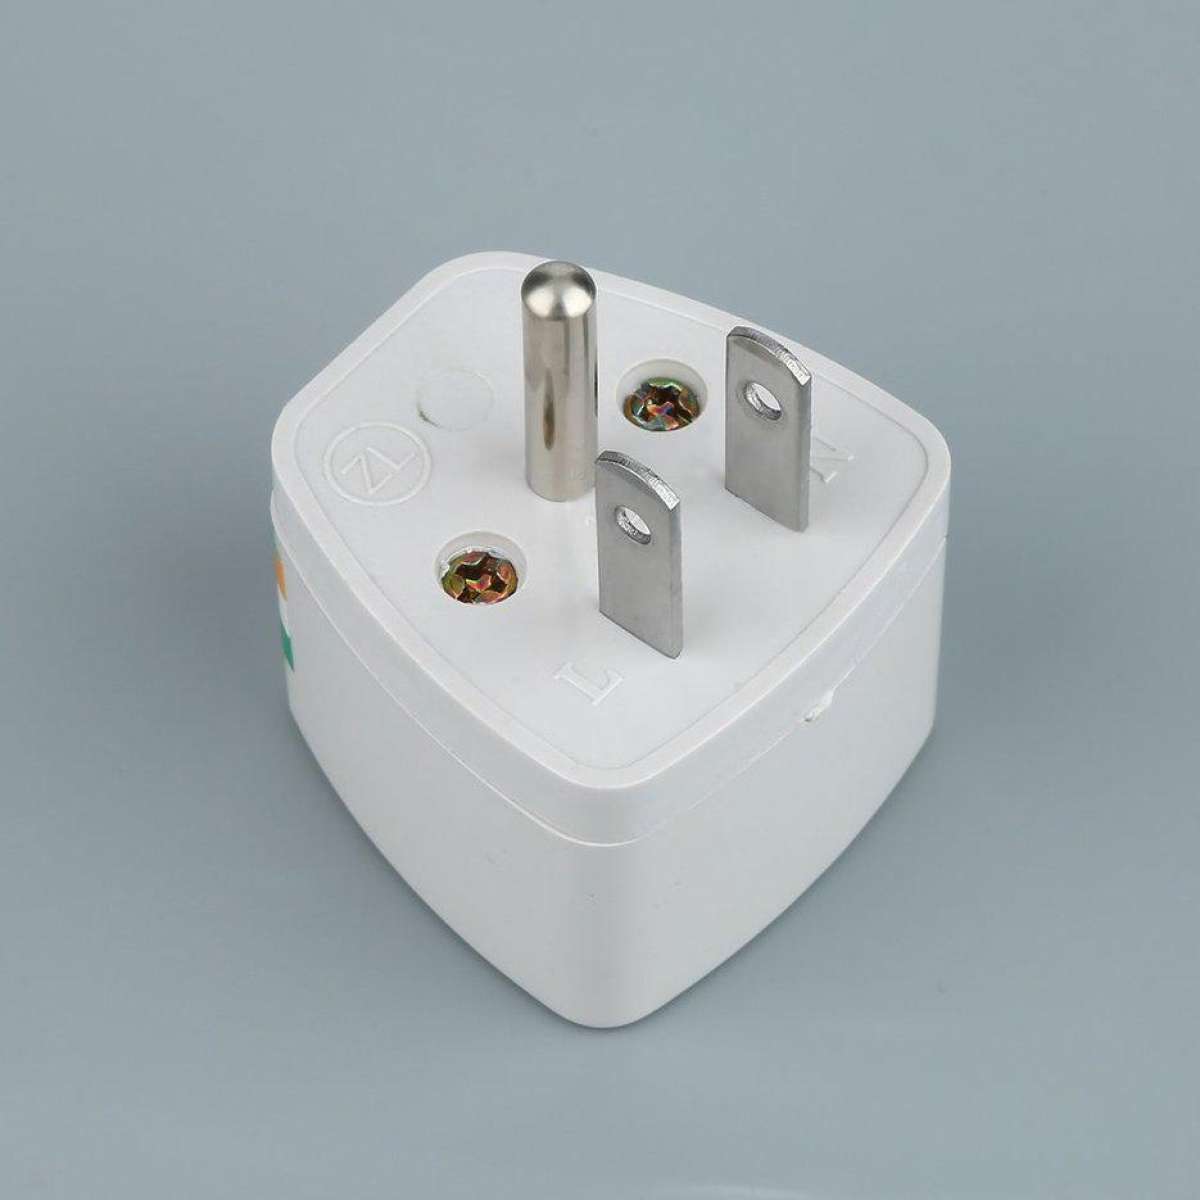 หัวแปลงปลั๊กไฟ หัวแปลง ปลั๊กไฟ ทั่วโลก Universal Adapter AU UK EU to US AC Travel Plug